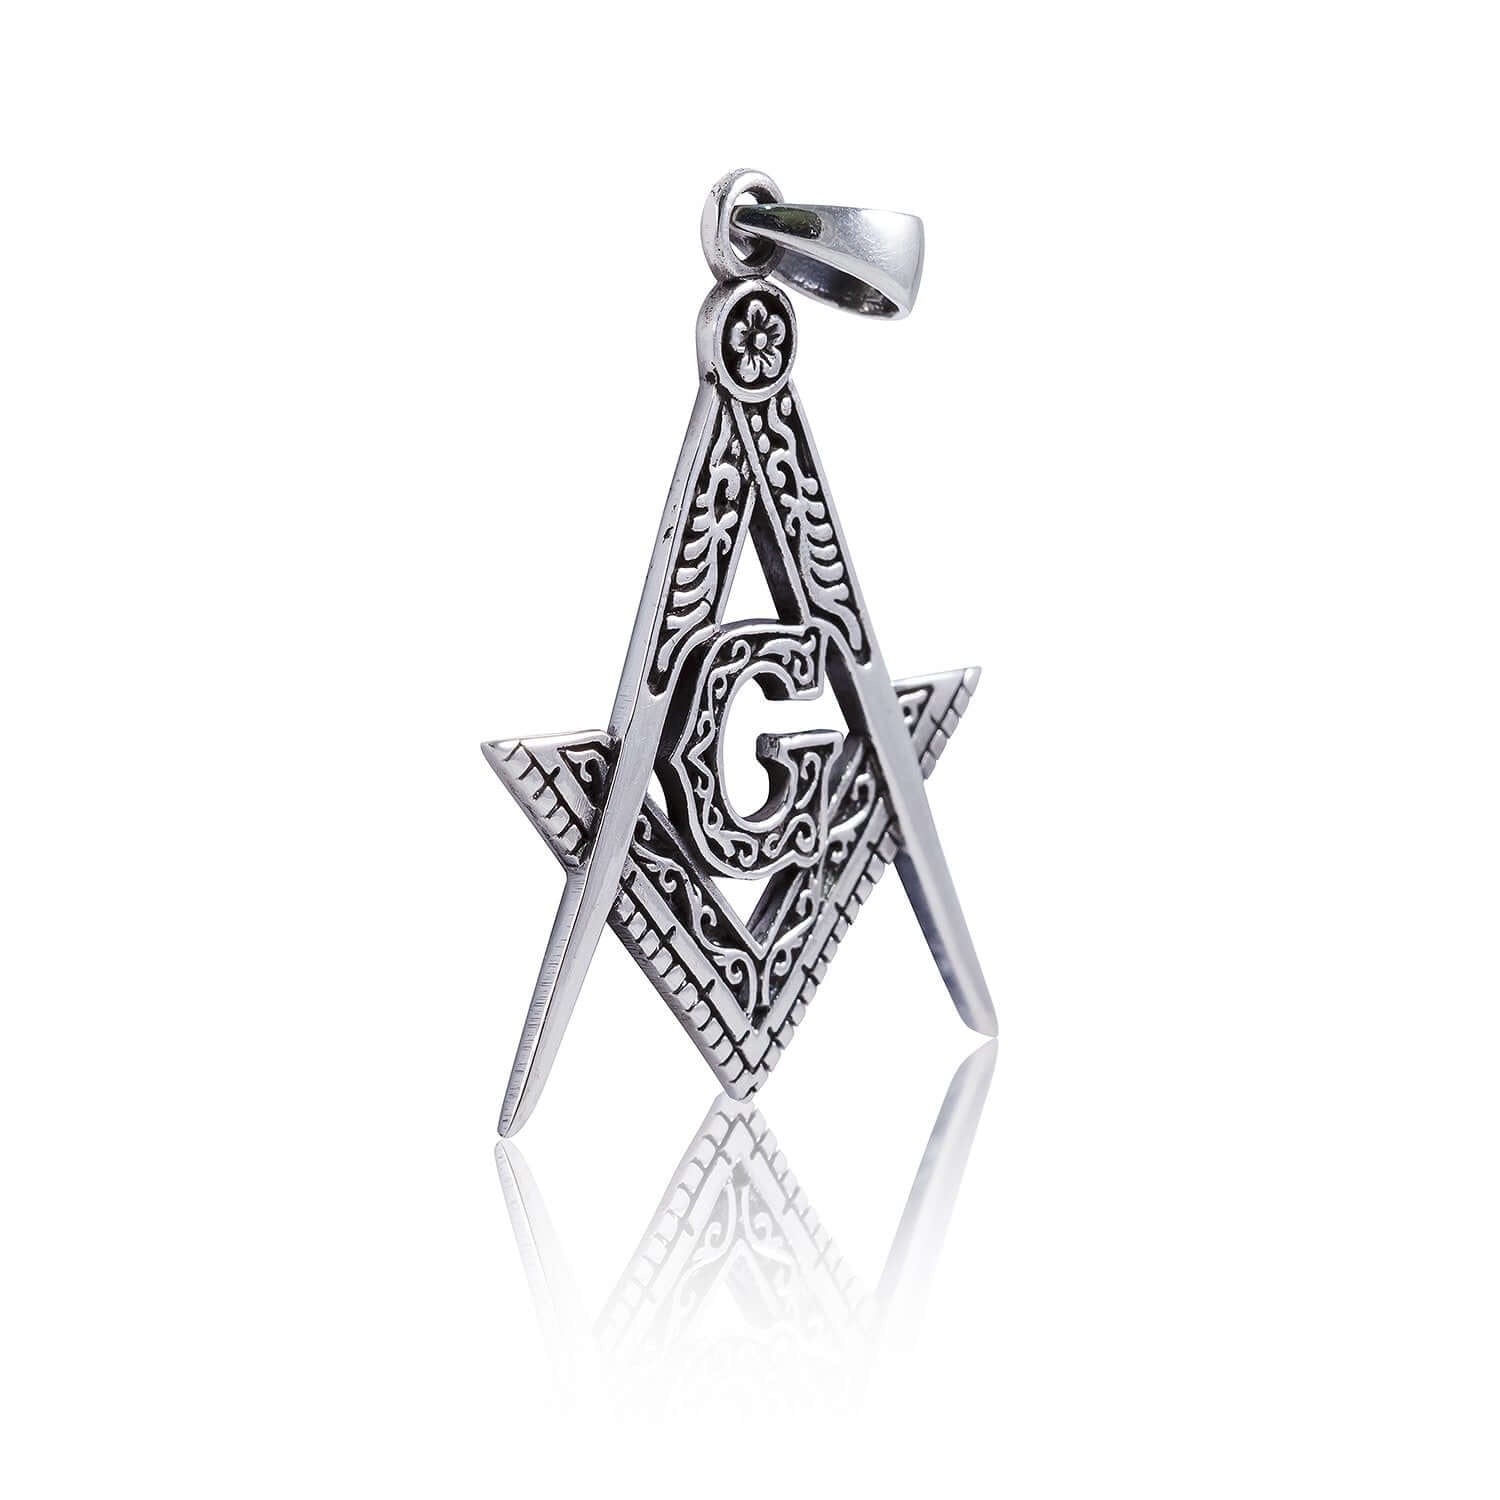 925 Sterling Silver Masonic Mason Freemasonry Freemason Compass Pendant - SilverMania925